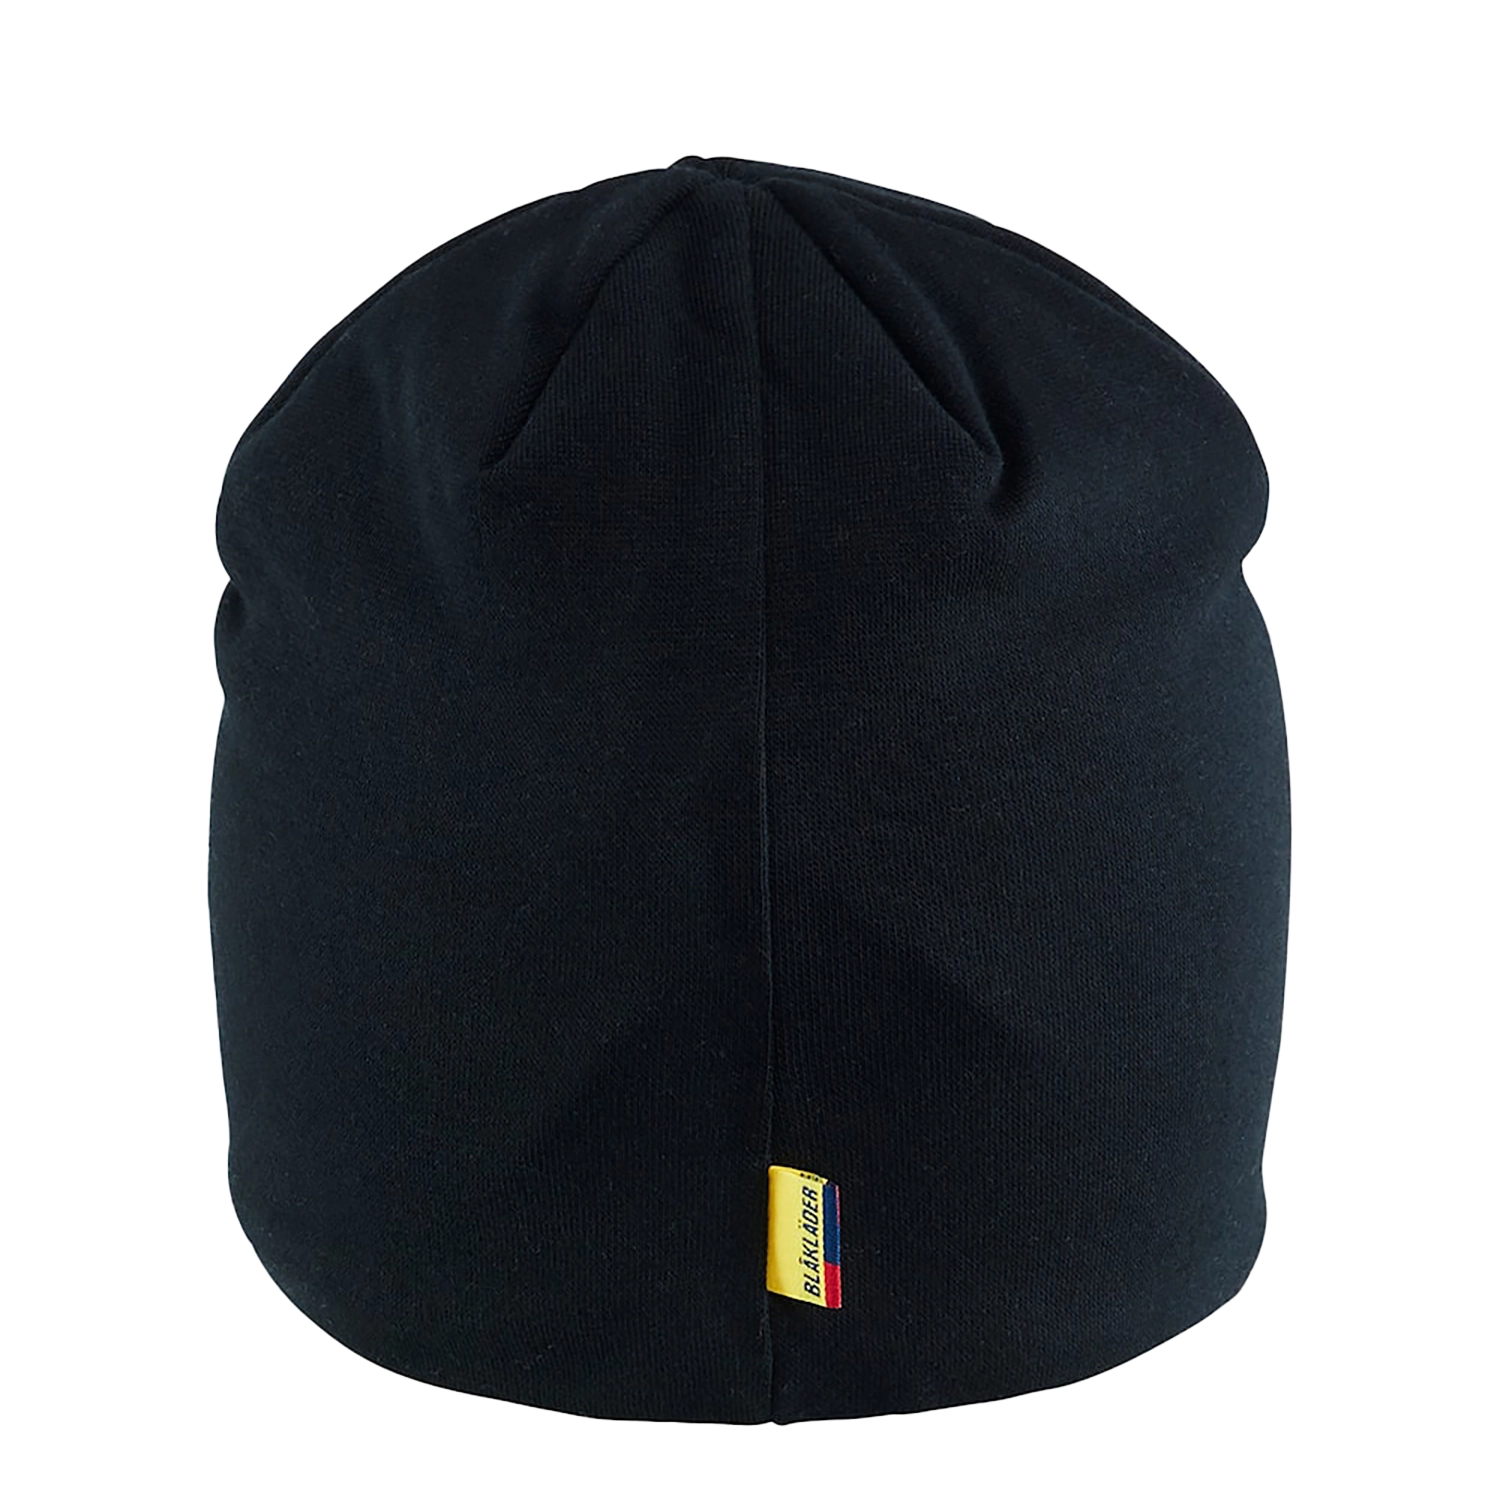 Bonnet 2003/0000/9900 - noir - taille unique